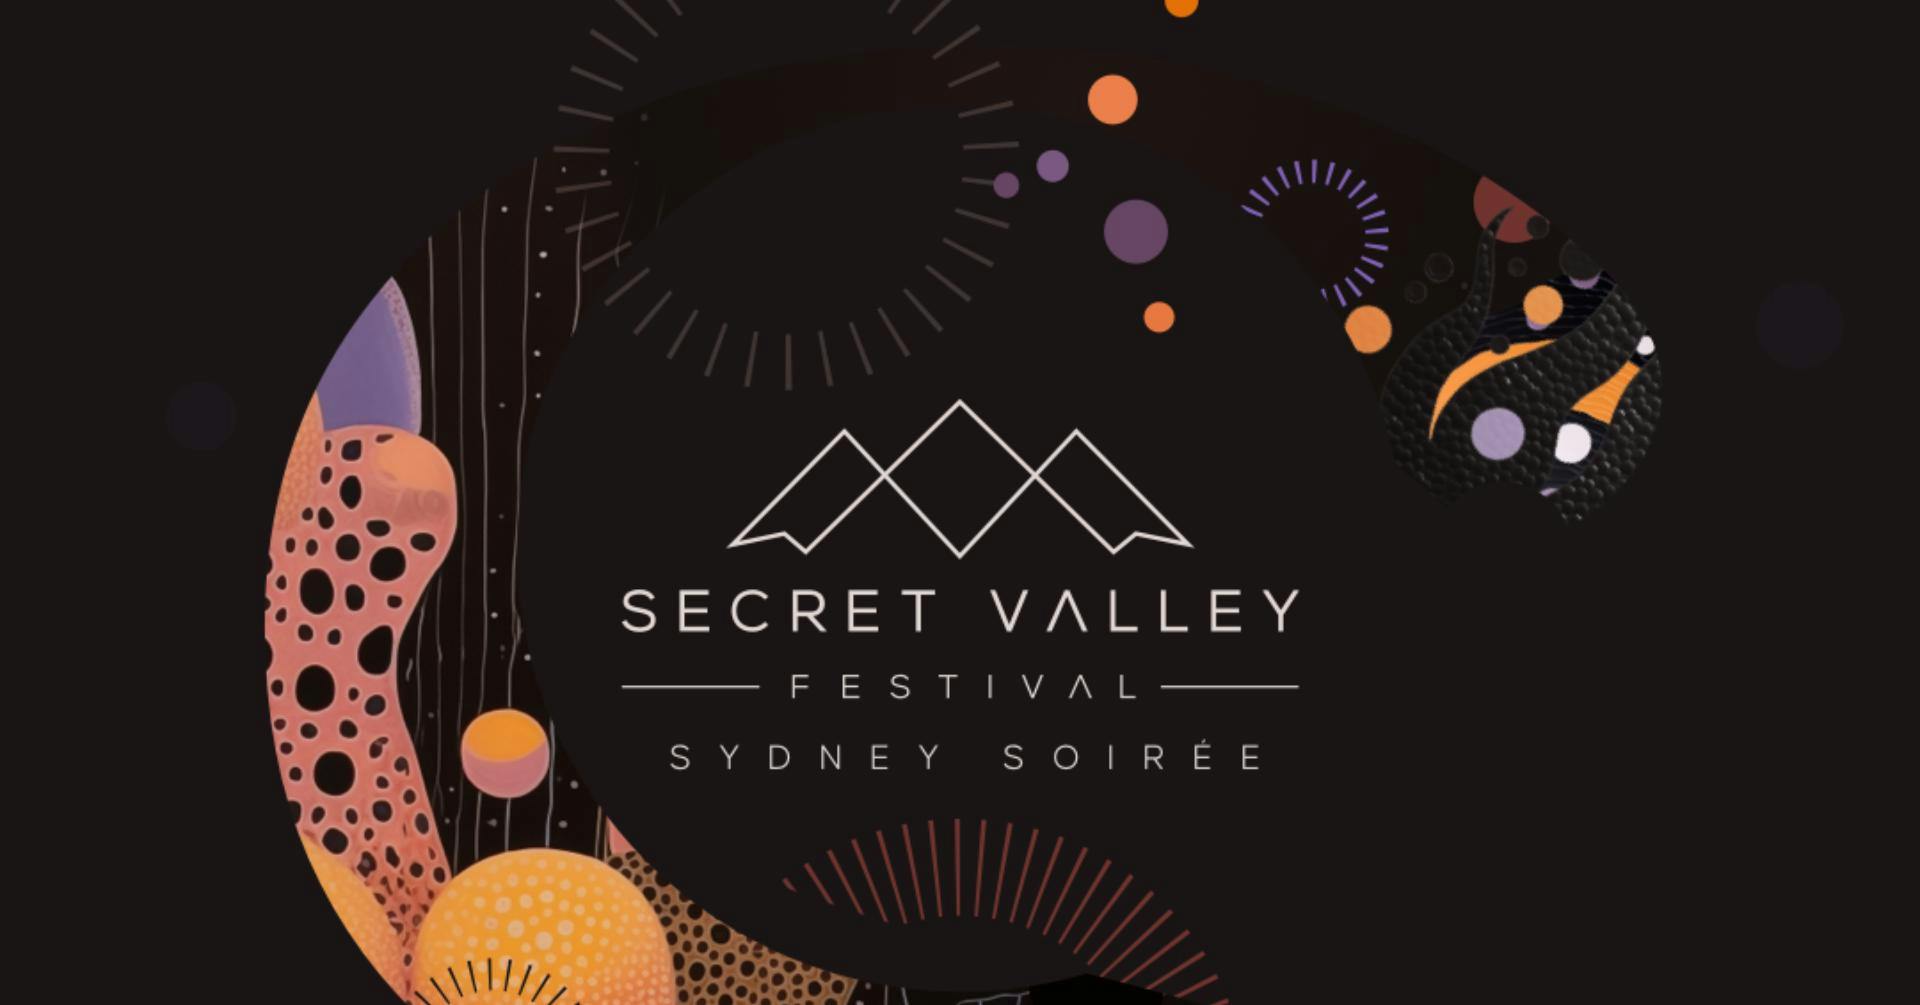 Secret Valley Sydney Soirée